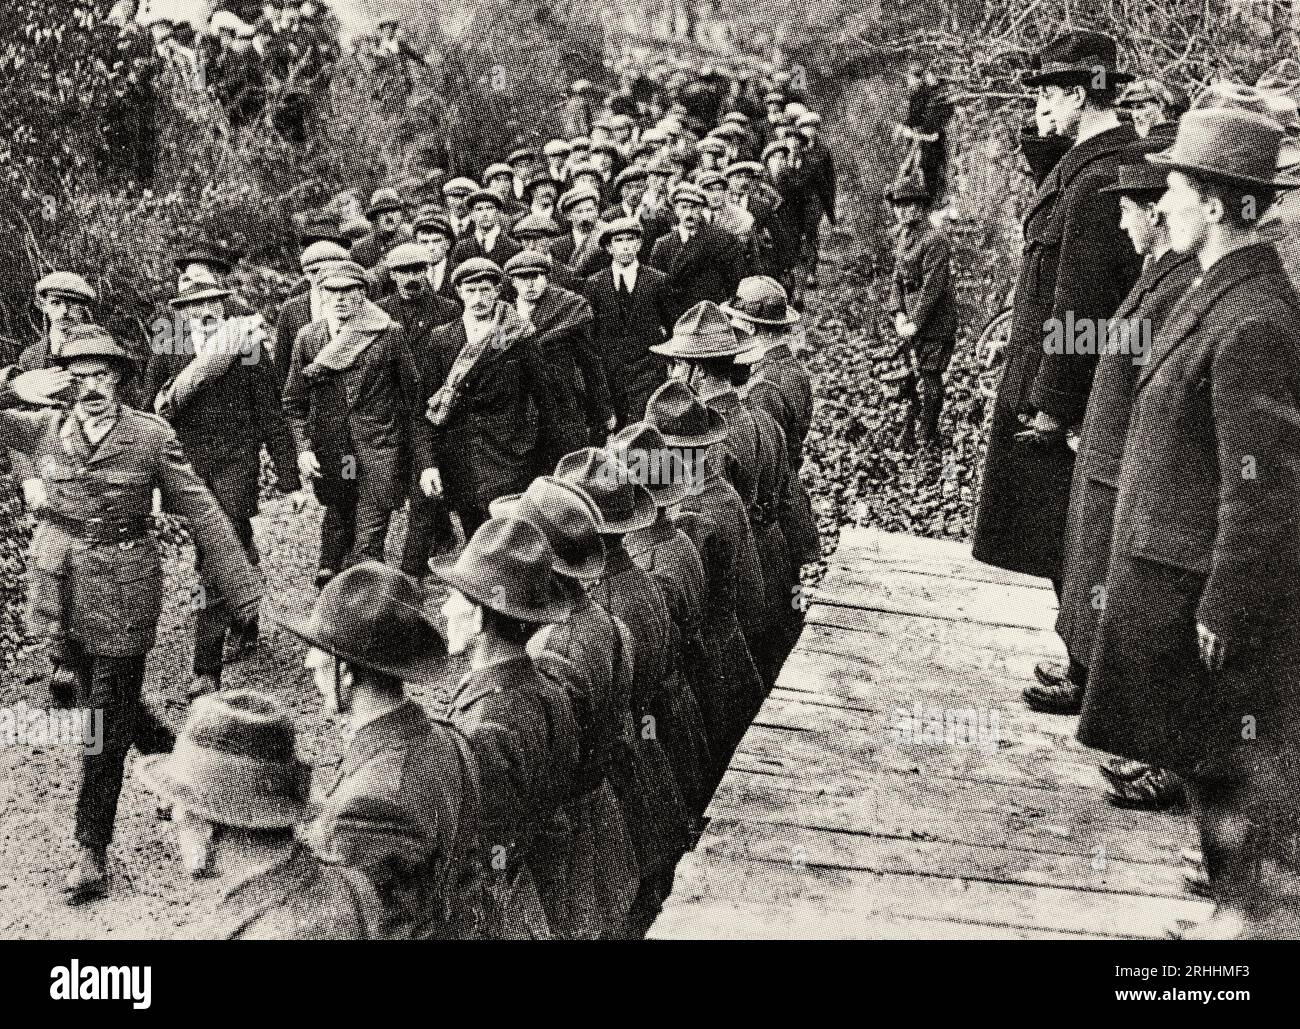 Une photographie du début du 20e siècle d'Eamon de Valera inspectant les troupes anti-traité pendant la guerre civile de 1922-23. Banque D'Images